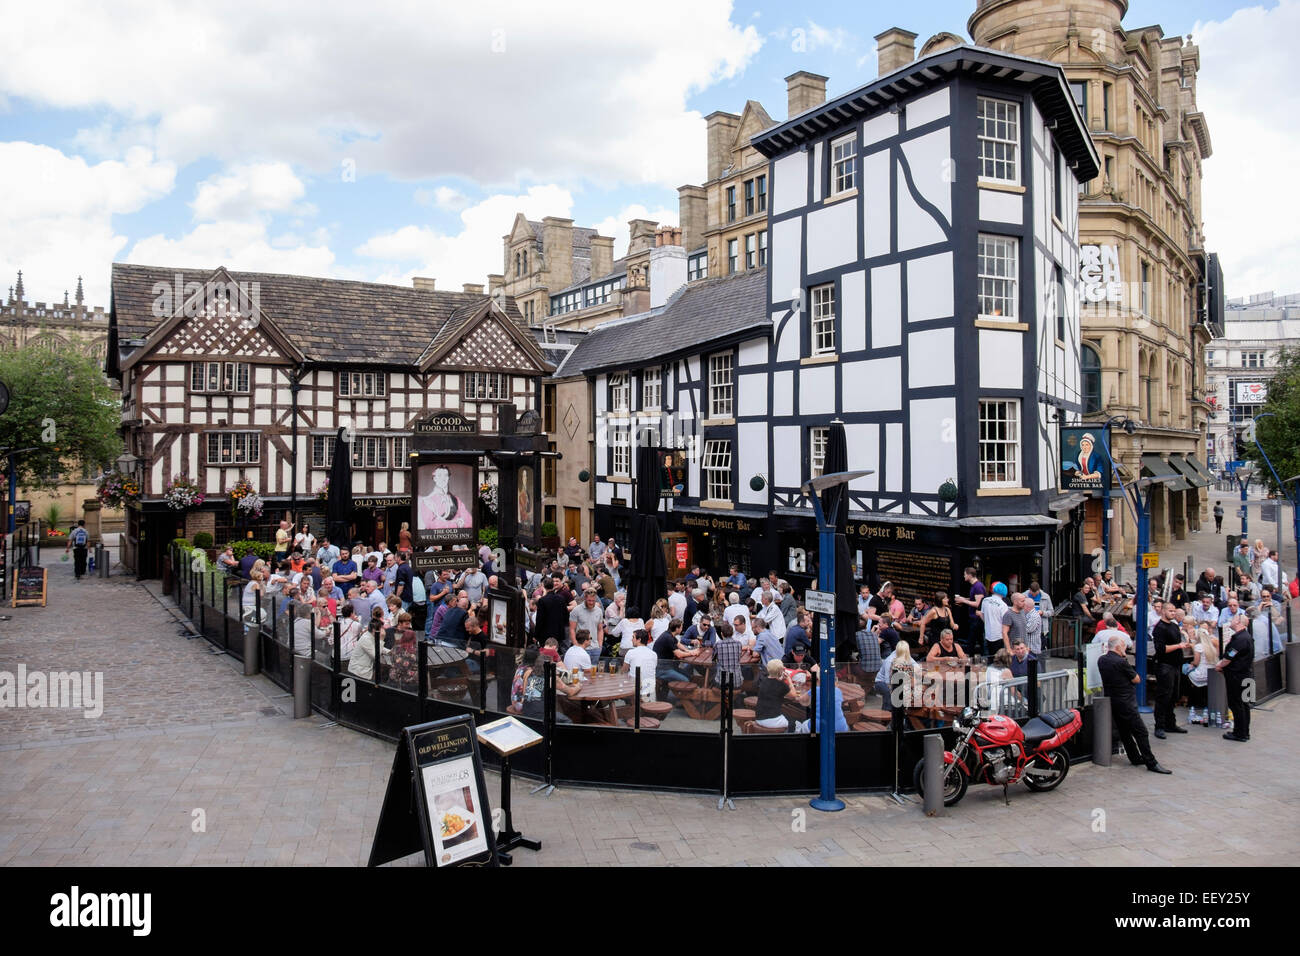 Besetzt Das alte Fachwerkhaus aus dem 16. Jahrhundert Wellington Inn 1552 städtischen Pub mit einer Menge von Menschen in den Biergarten. Manchester, England, Großbritannien, Großbritannien Stockfoto